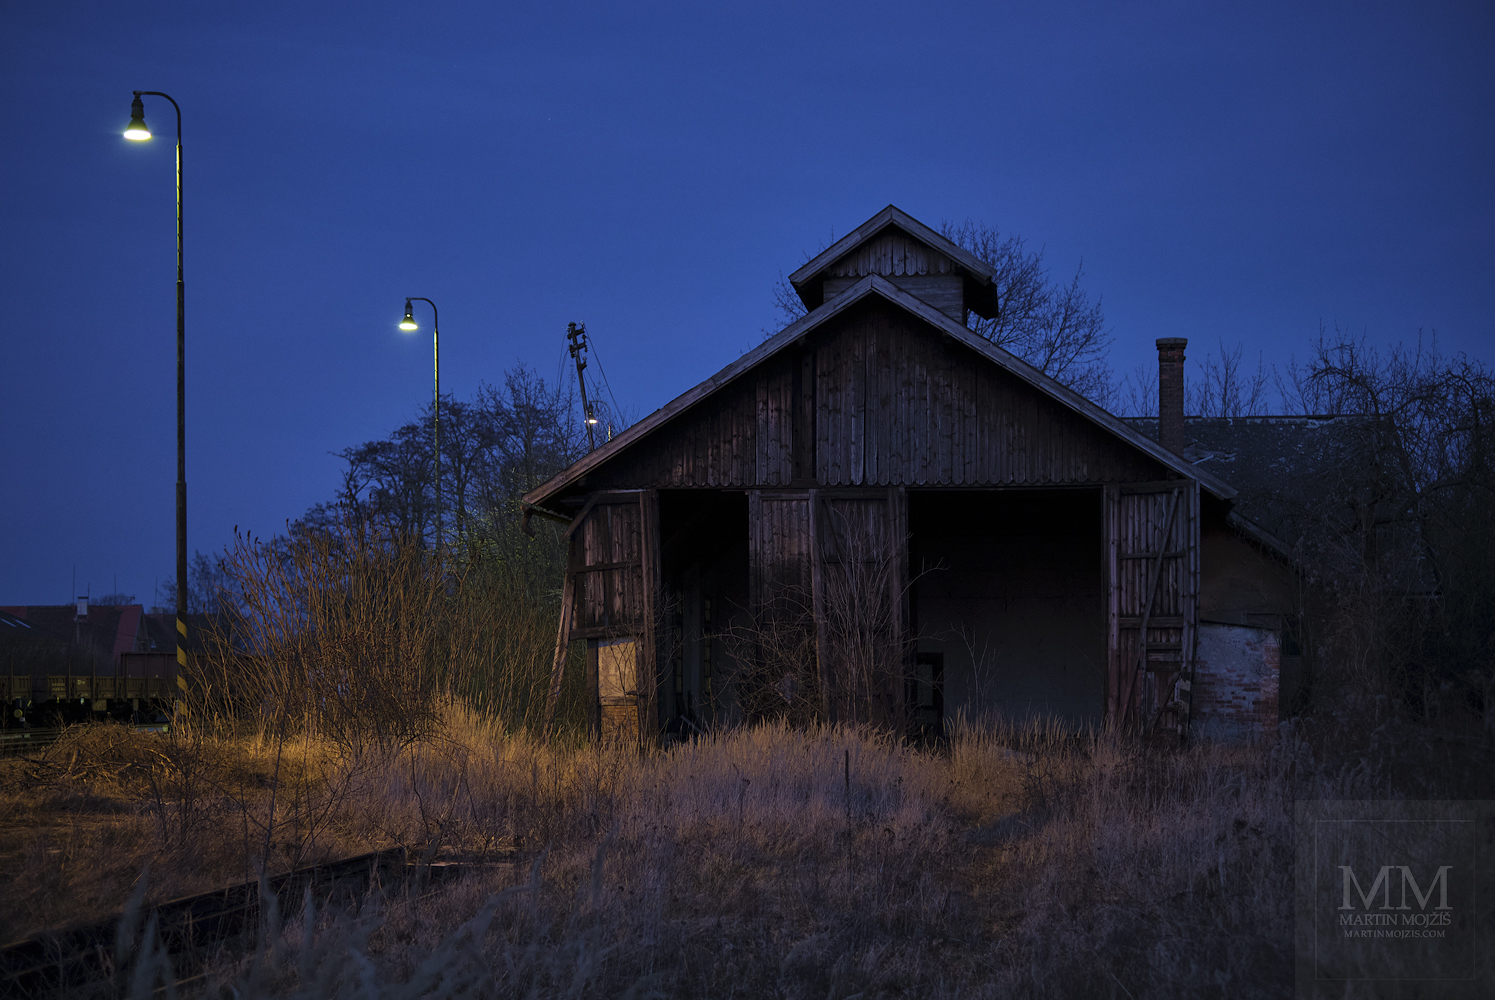 Velkoformátová umělecká fotografie nádraží za soumraku. Martin Mojžíš.